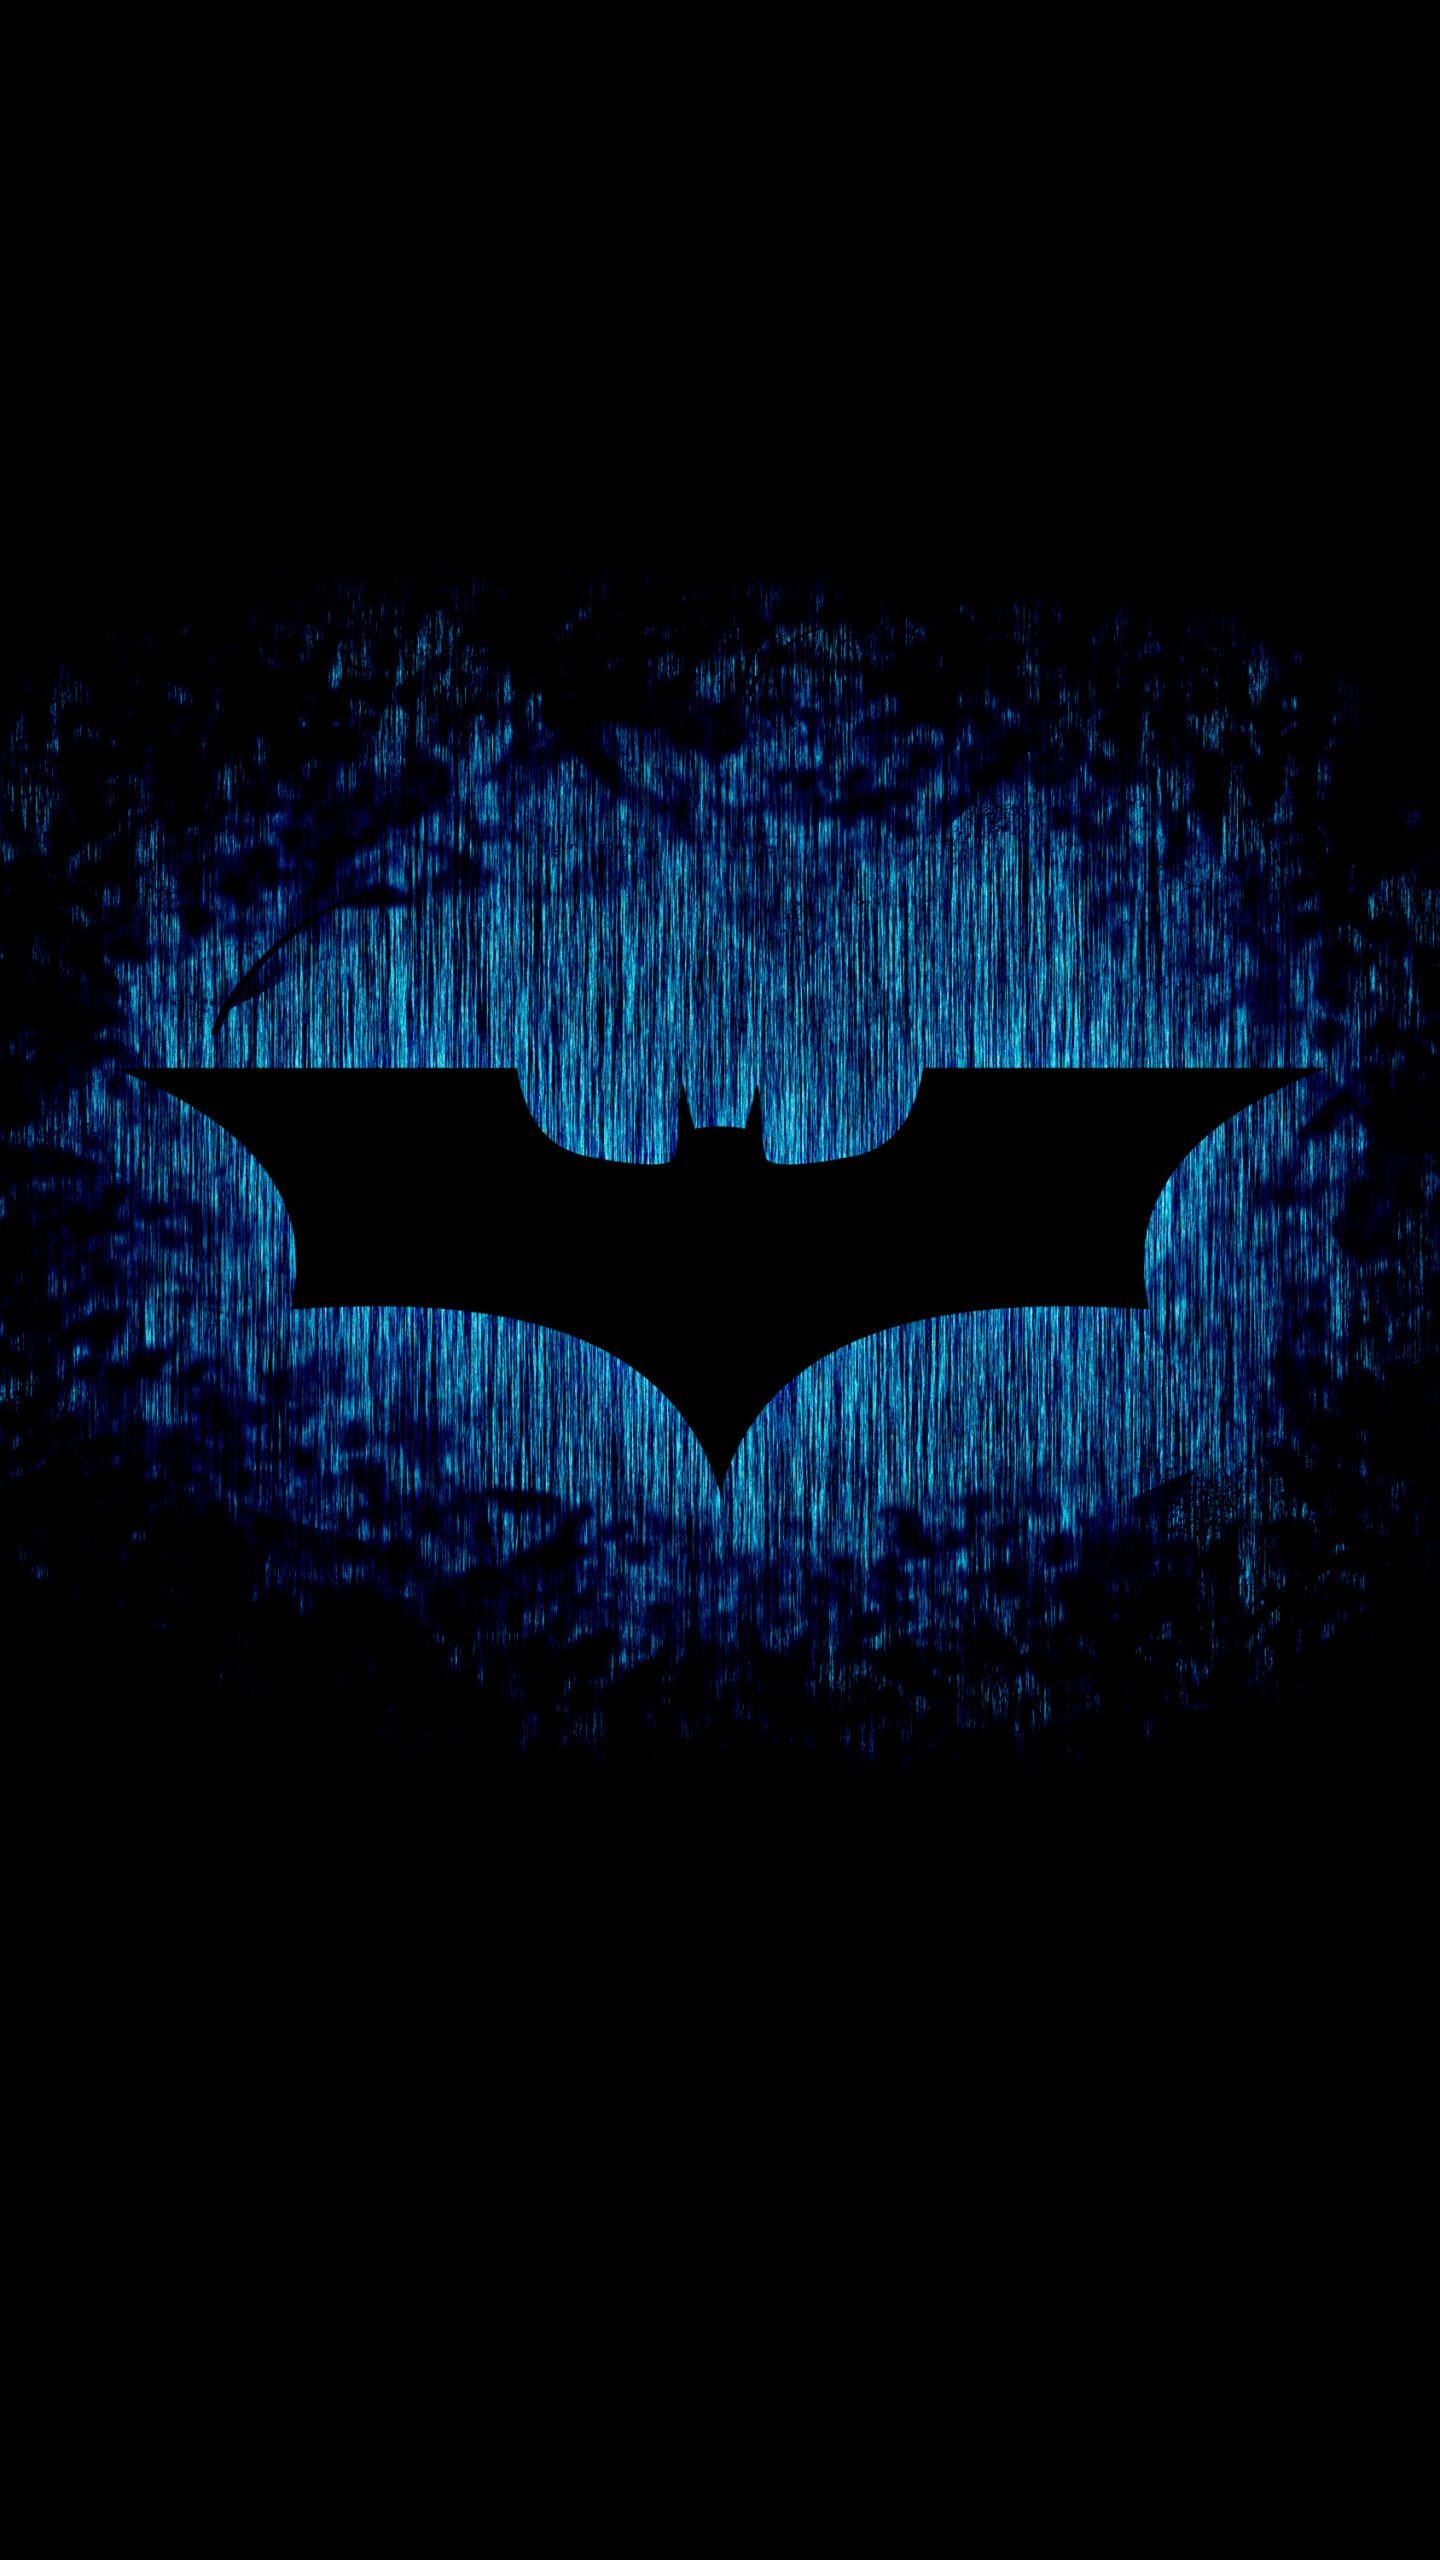 The Batman wallpaper [2109x4571] : r/Amoledbackgrounds